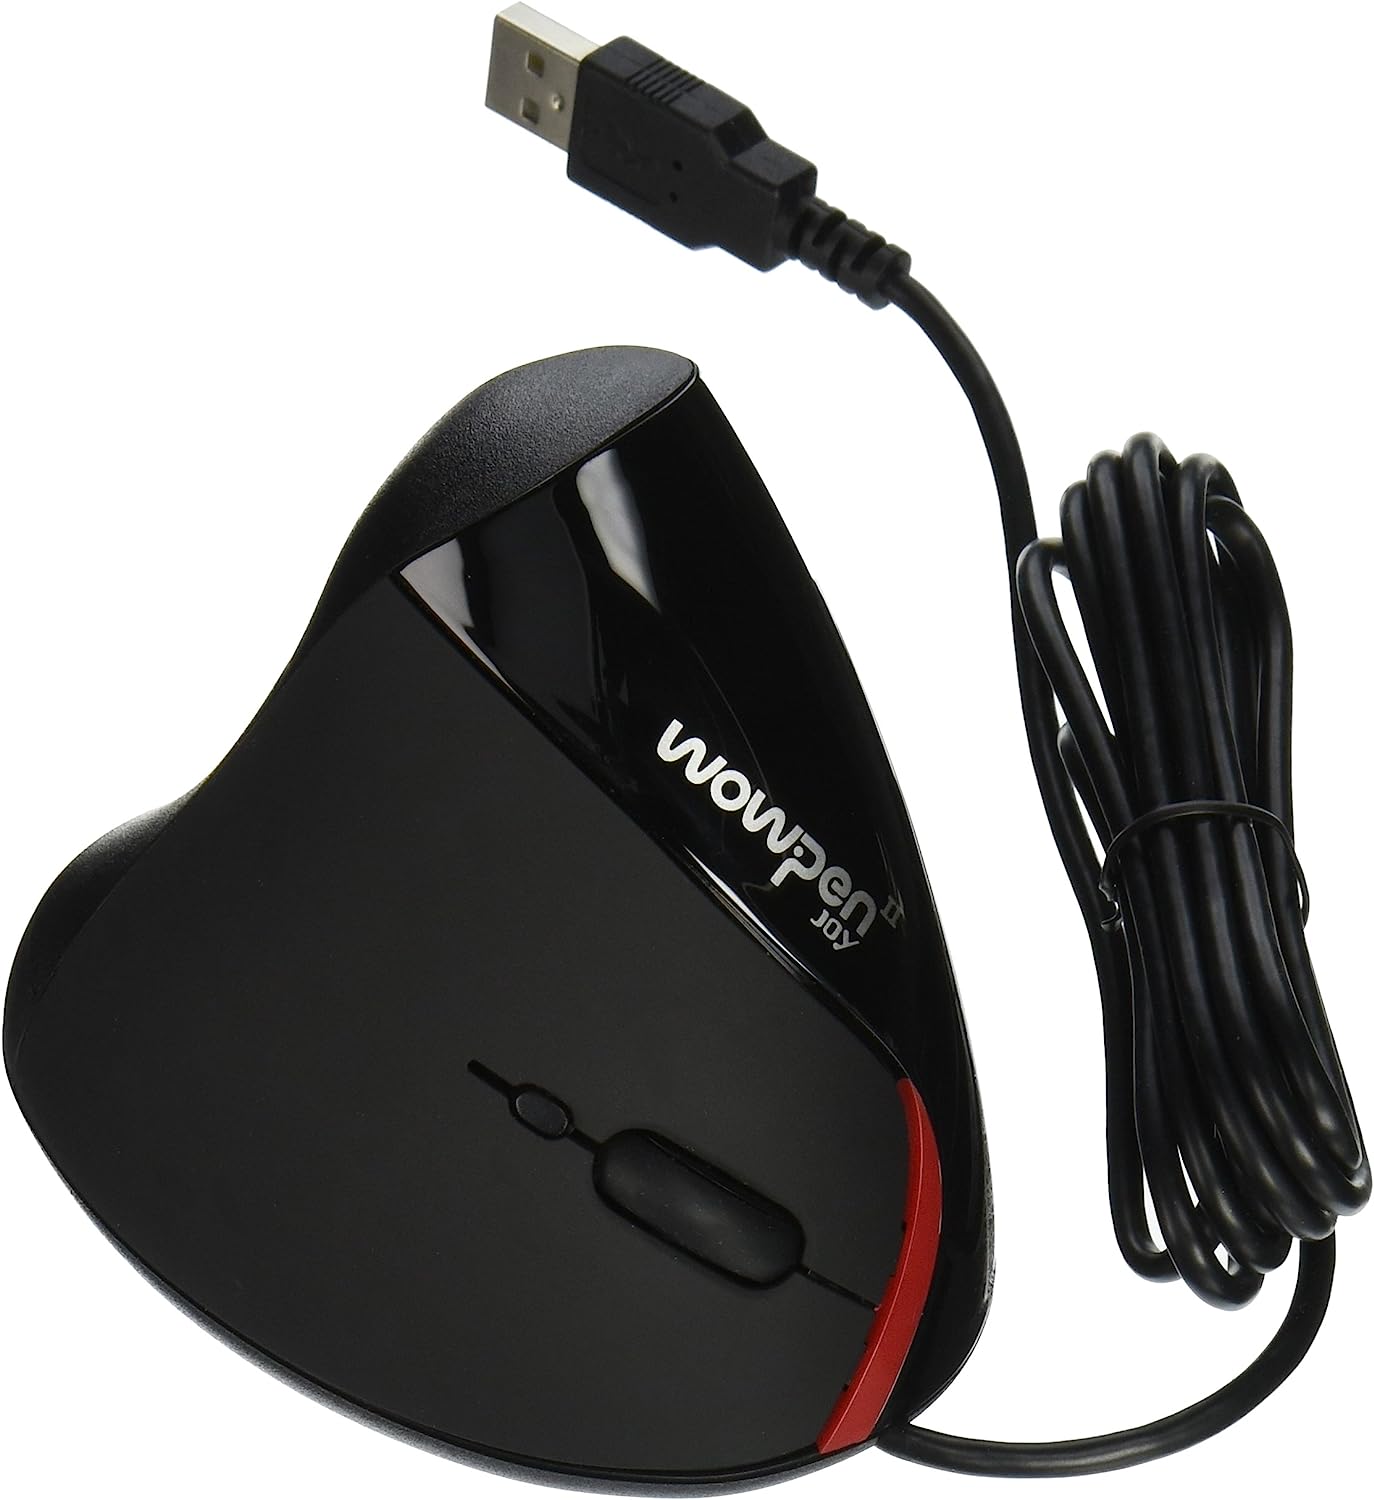 עכבר ארגונומי חוטי למחשב | עכבר Wow Pen Joy II | דגם WP-012-BK-E | חיבור USB